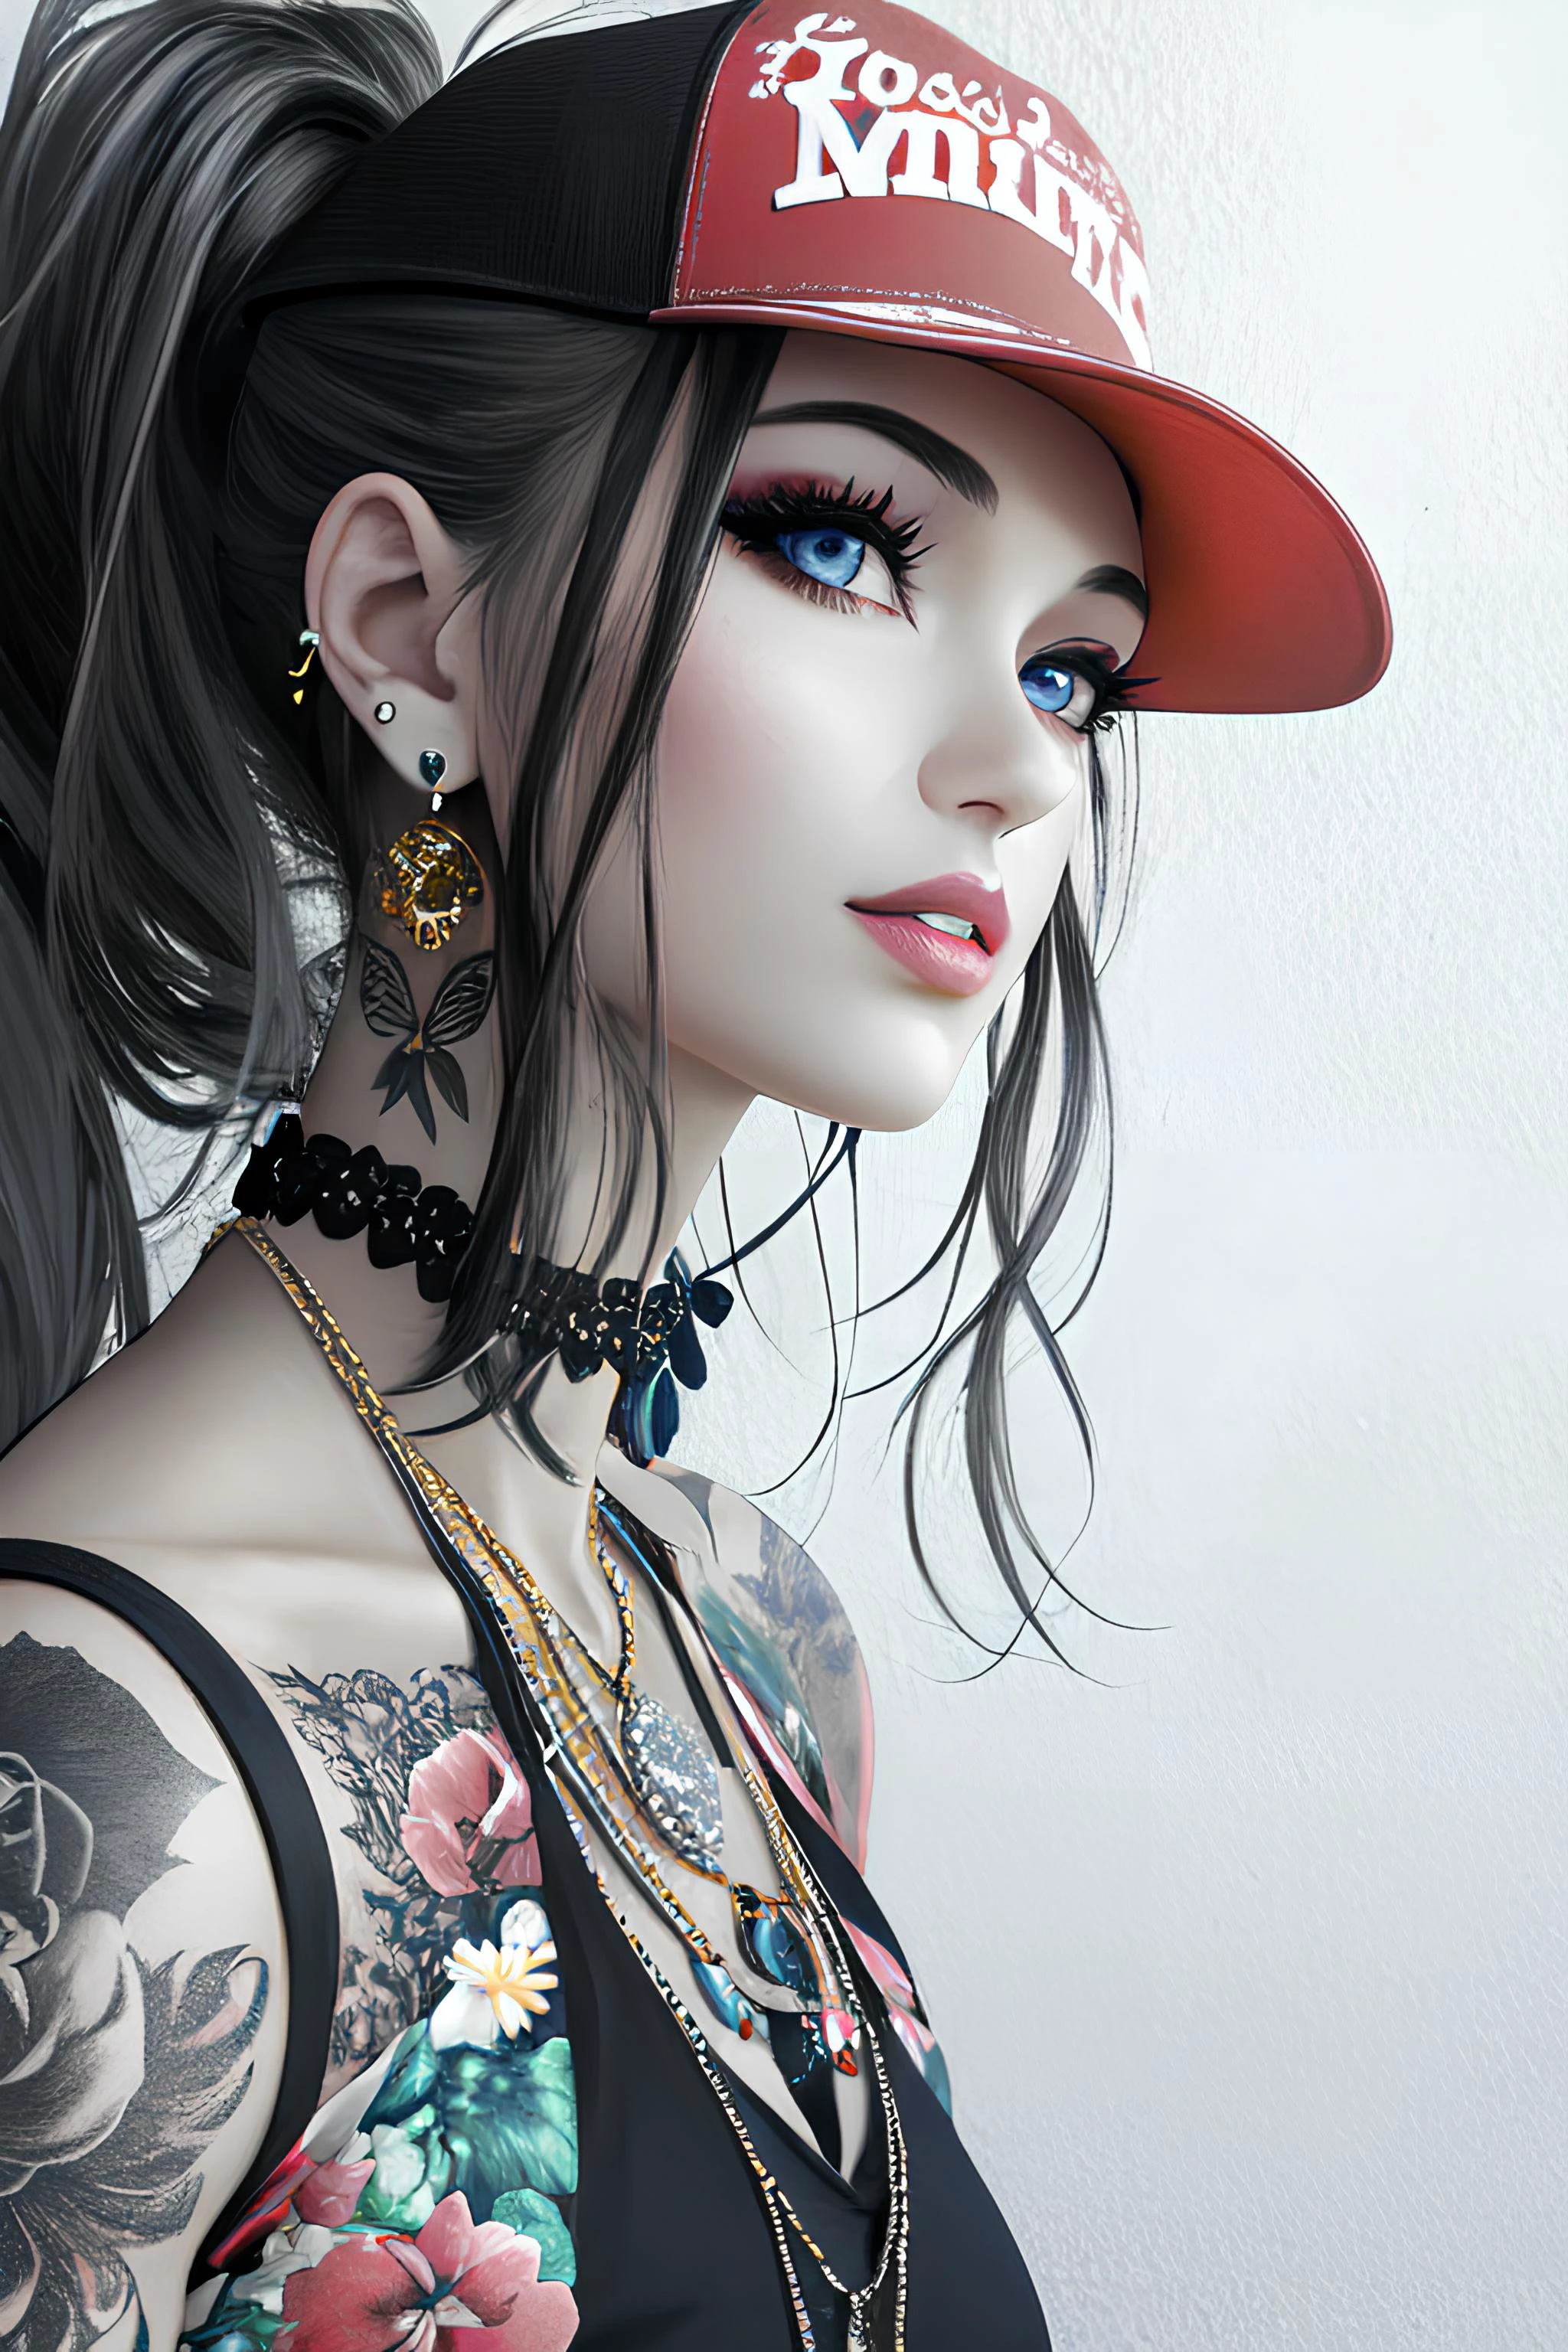 1個女孩, 獨自的, 珠寶, 有, 實際的, 冲孔, 耳環, 黑髮, 項鍊, 棒球帽, 藍眼睛, ear 冲孔, 馬尾辮, 刺青, 化妝品, 传统媒体, 嘴唇